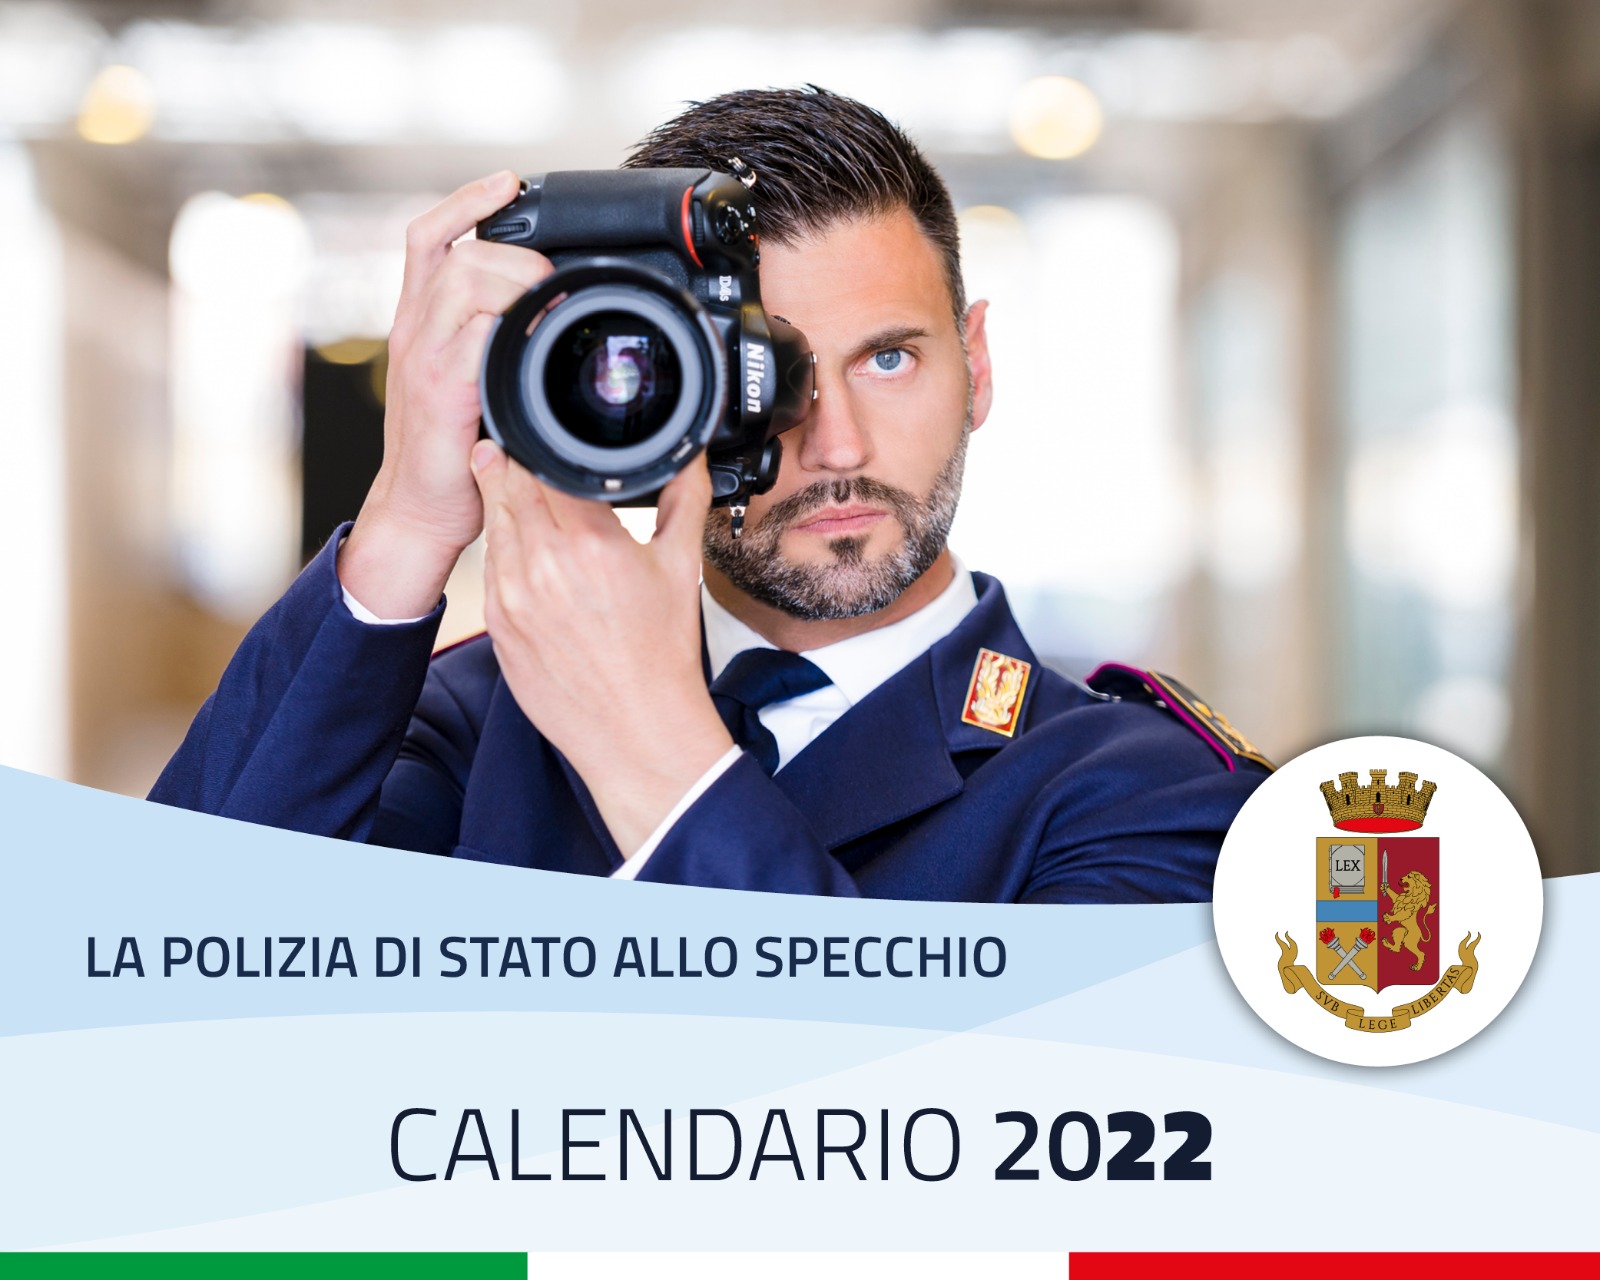 In prenotazione il nuovo calendario della Polizia di Stato 2022